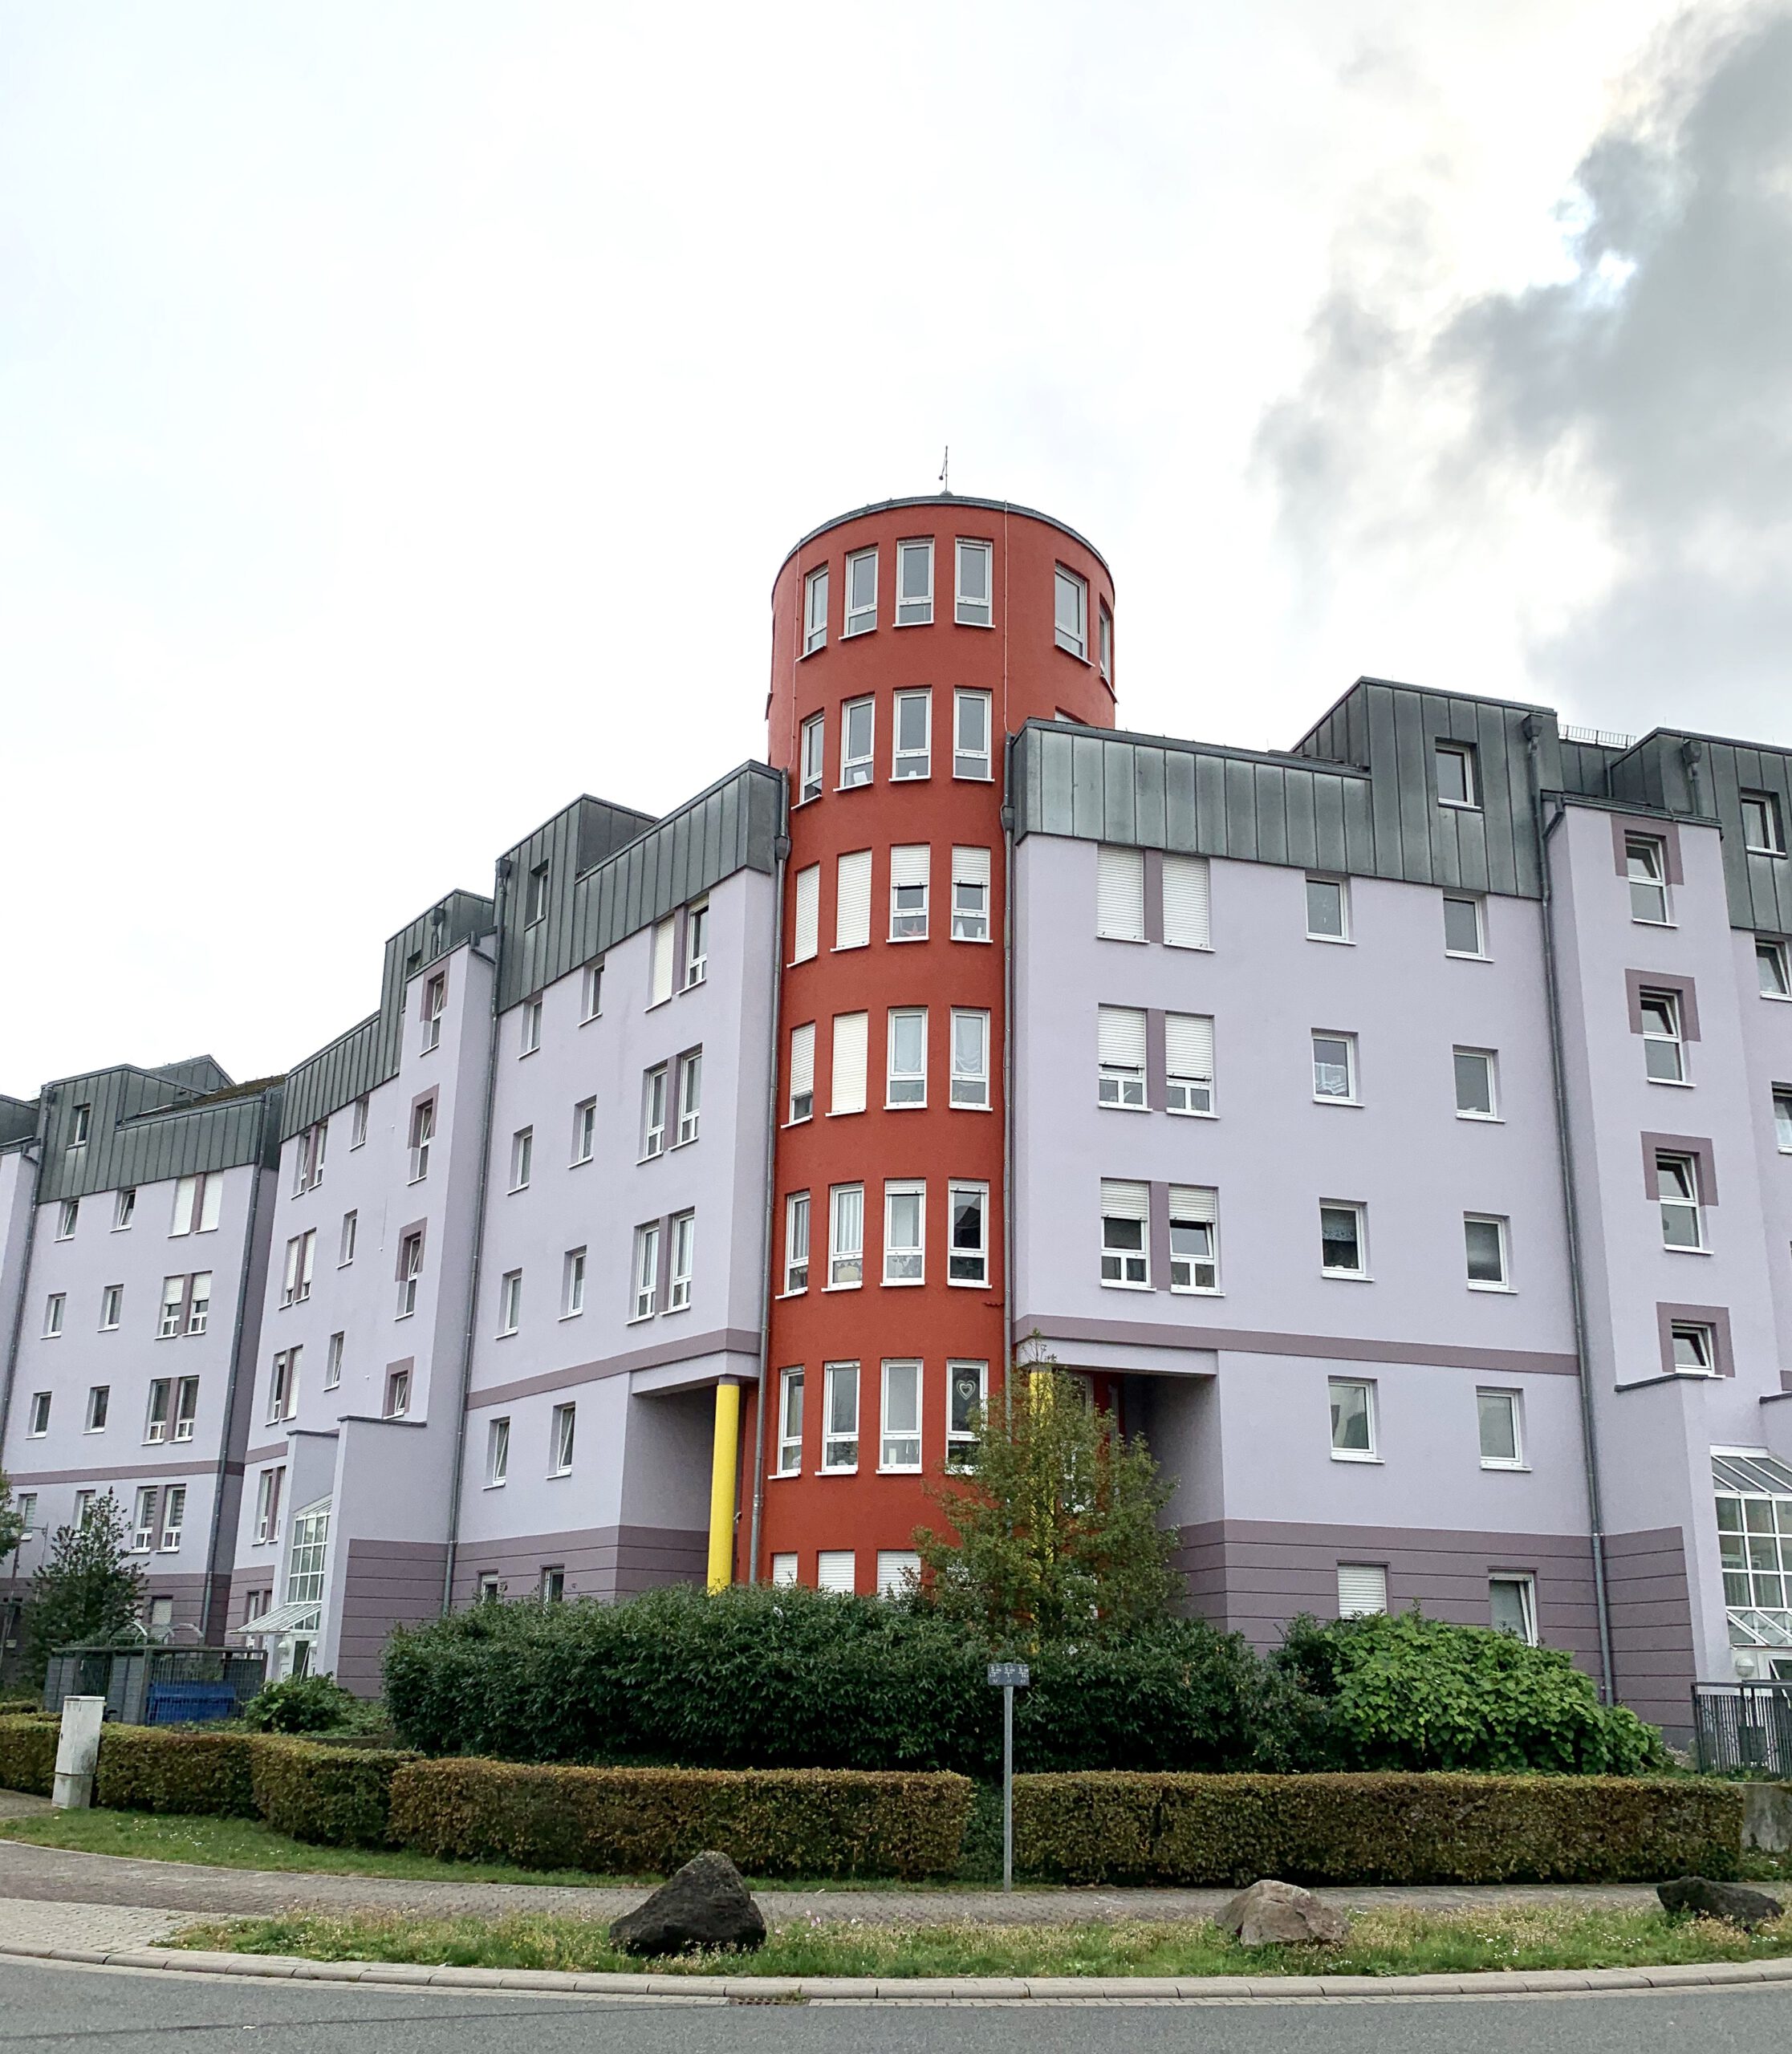 Schicke 2-Zimmerwohnung in perfekter Wohnlagelage von Rüsselsheim am Main